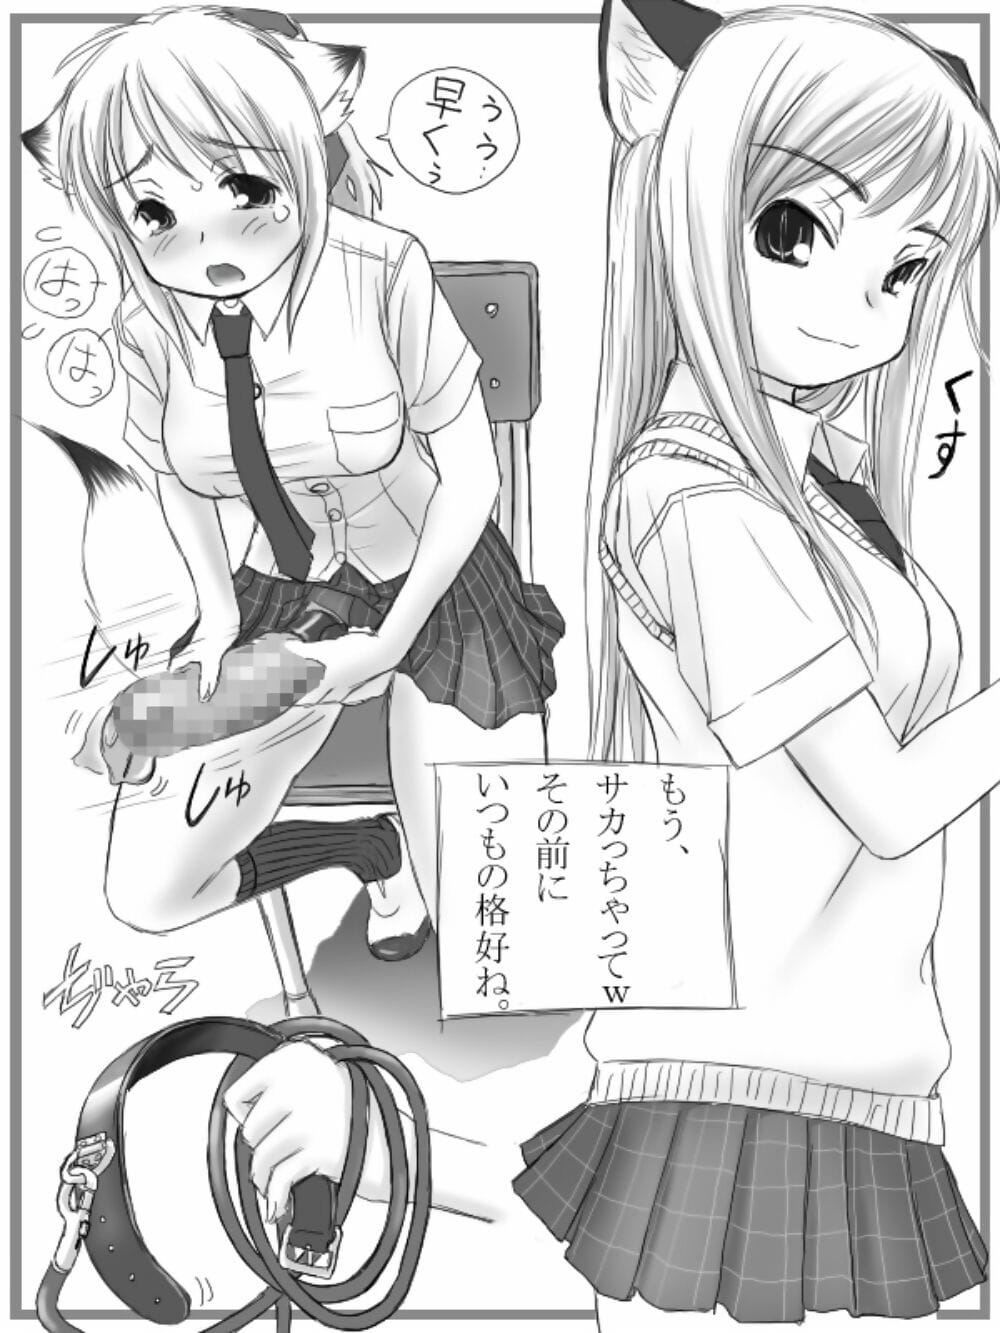 mui garou mui Futanari san illustrazione shuu + omake manga digitale parte 3